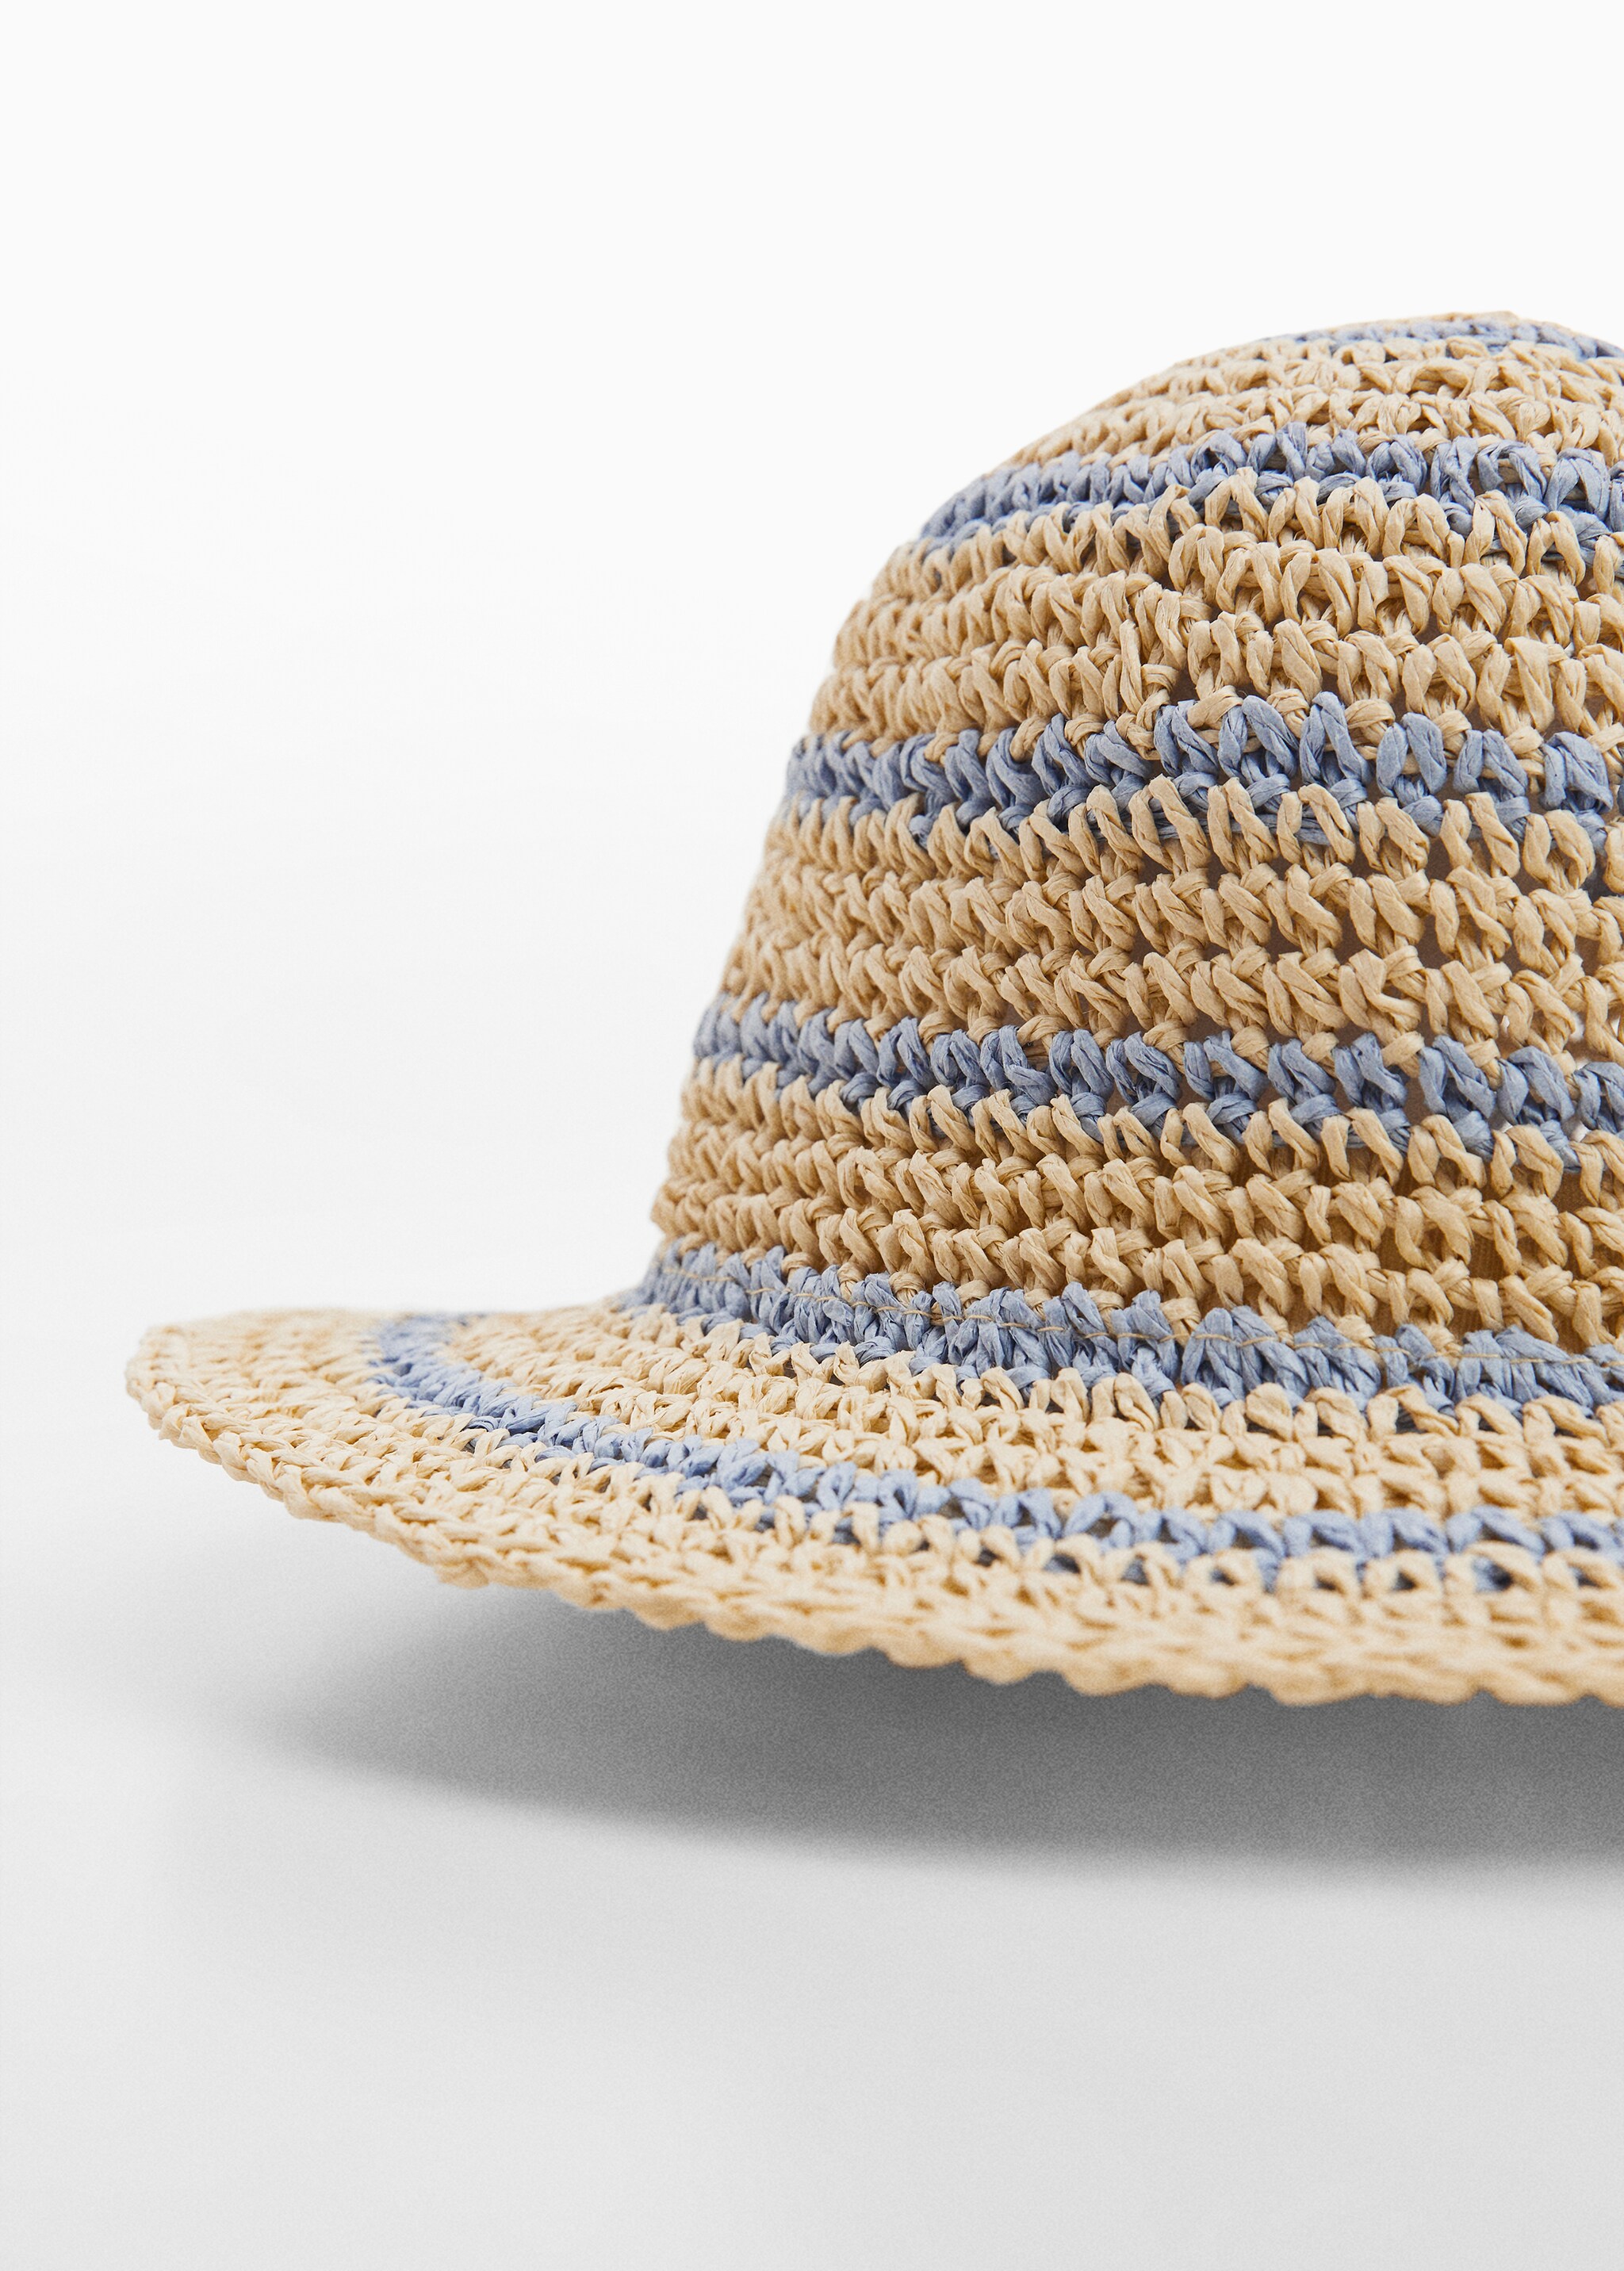 Bicolour straw hat - Medium plane